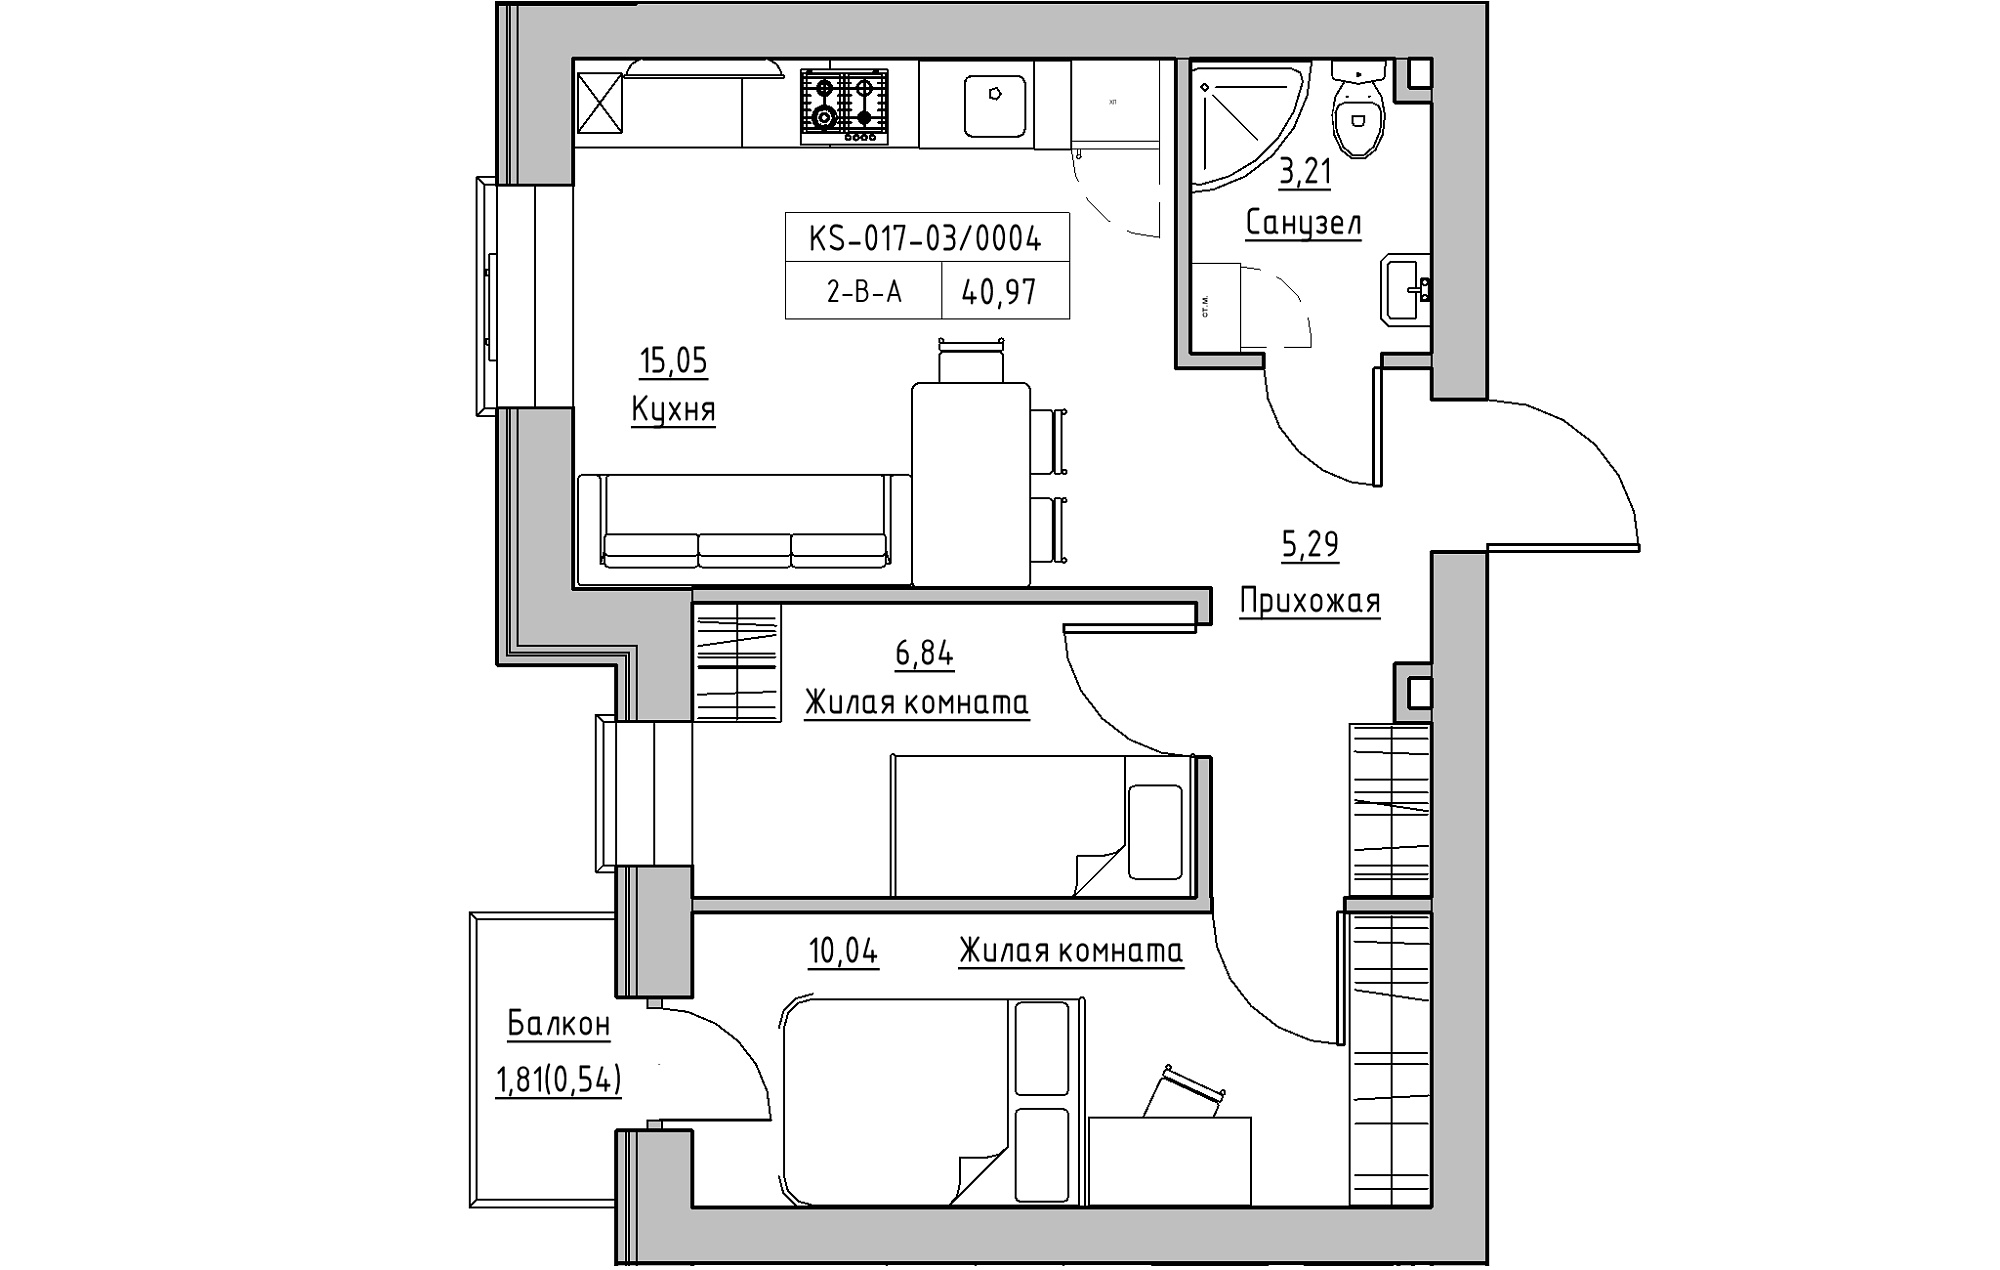 Планування 2-к квартира площею 40.97м2, KS-017-03/0004.